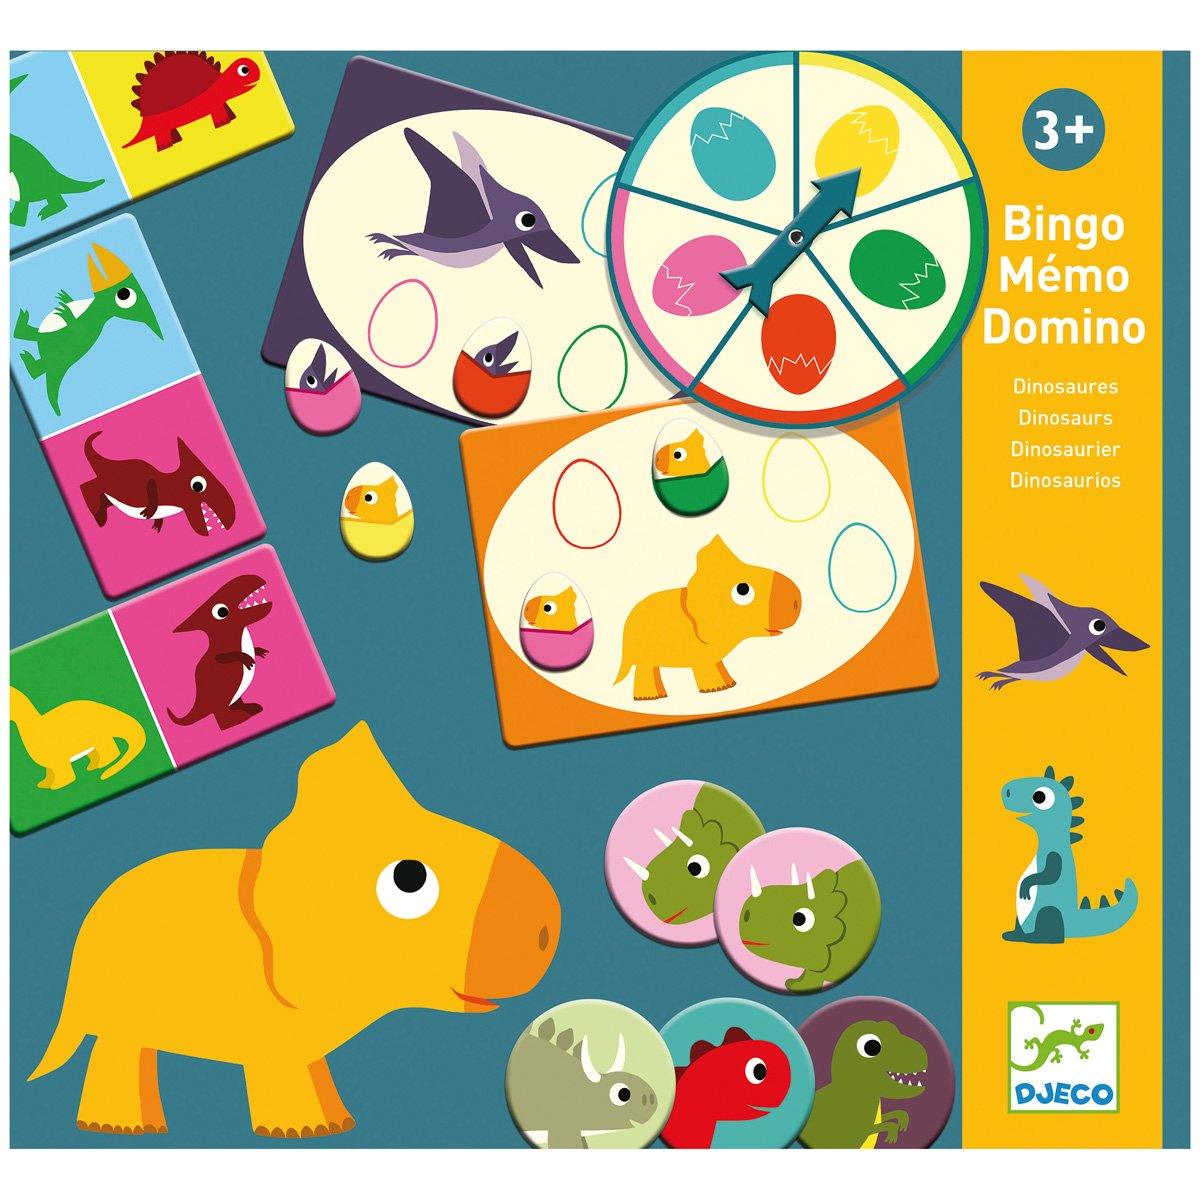 Djeco: set of games bingo memo dominoes Dinosaurs